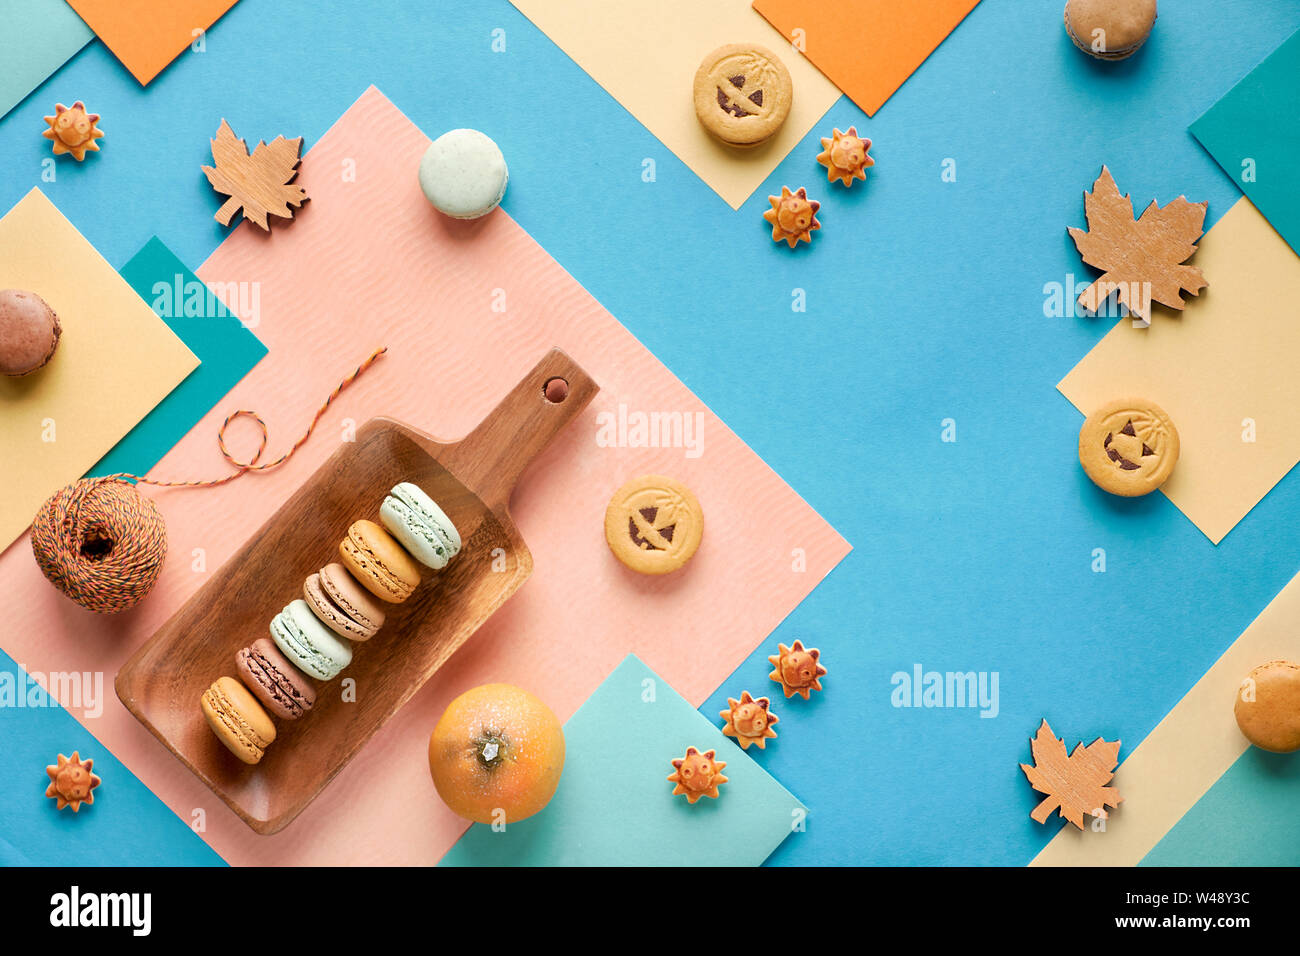 Automne fond géométrique, le papier à plat avec les cookies d'Halloween, les macarons et les décorations saisonnières Banque D'Images